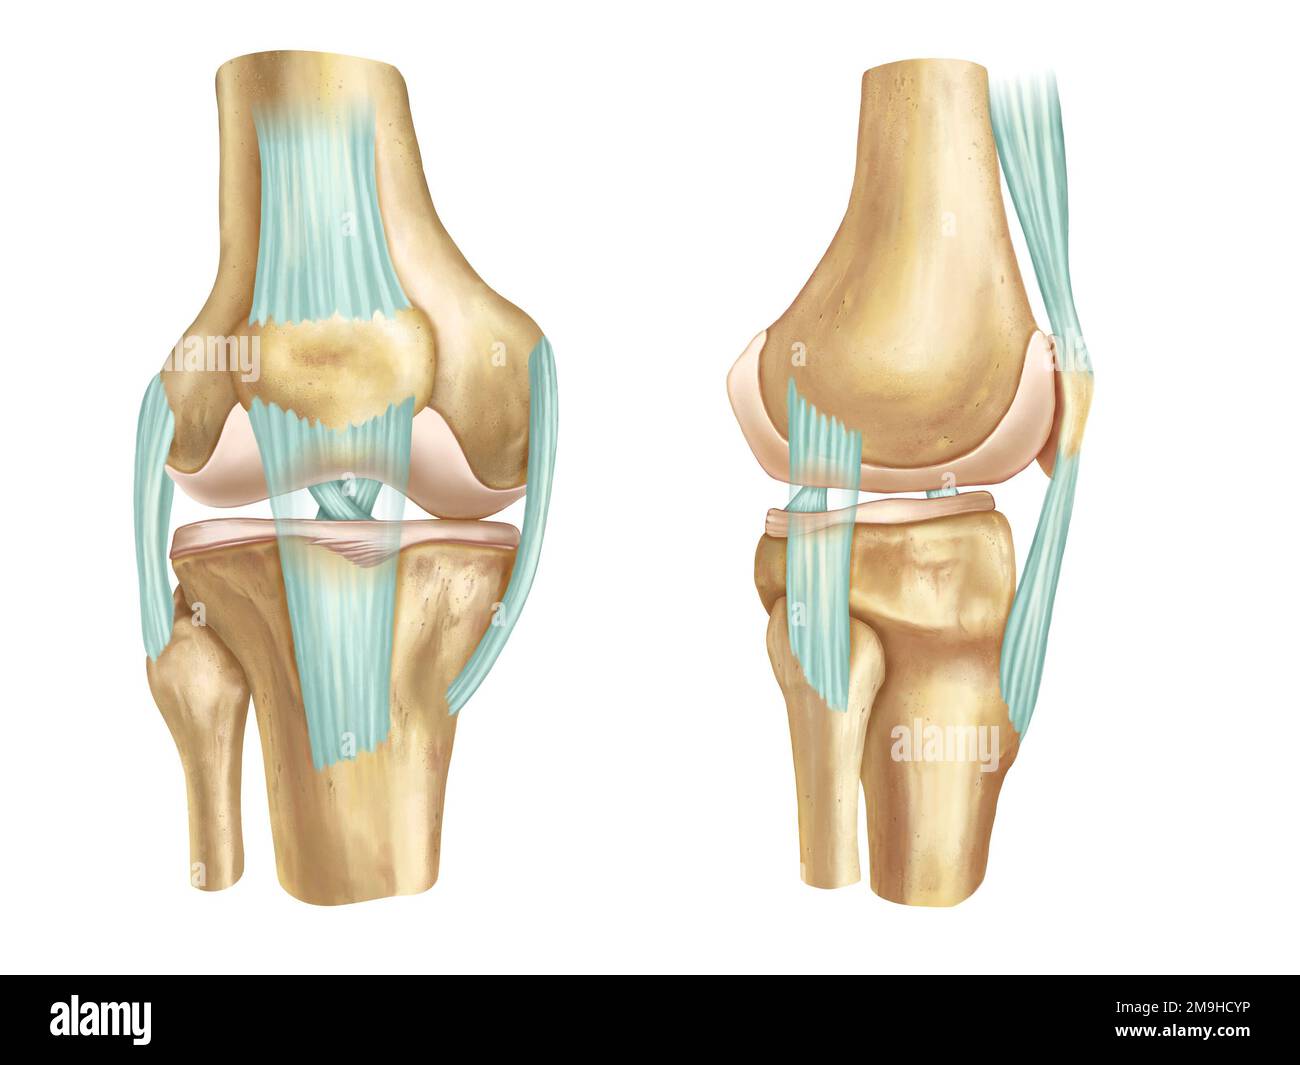 Vista anatomica anteriore e laterale di un ginocchio umano. Illustrazione digitale. Foto Stock